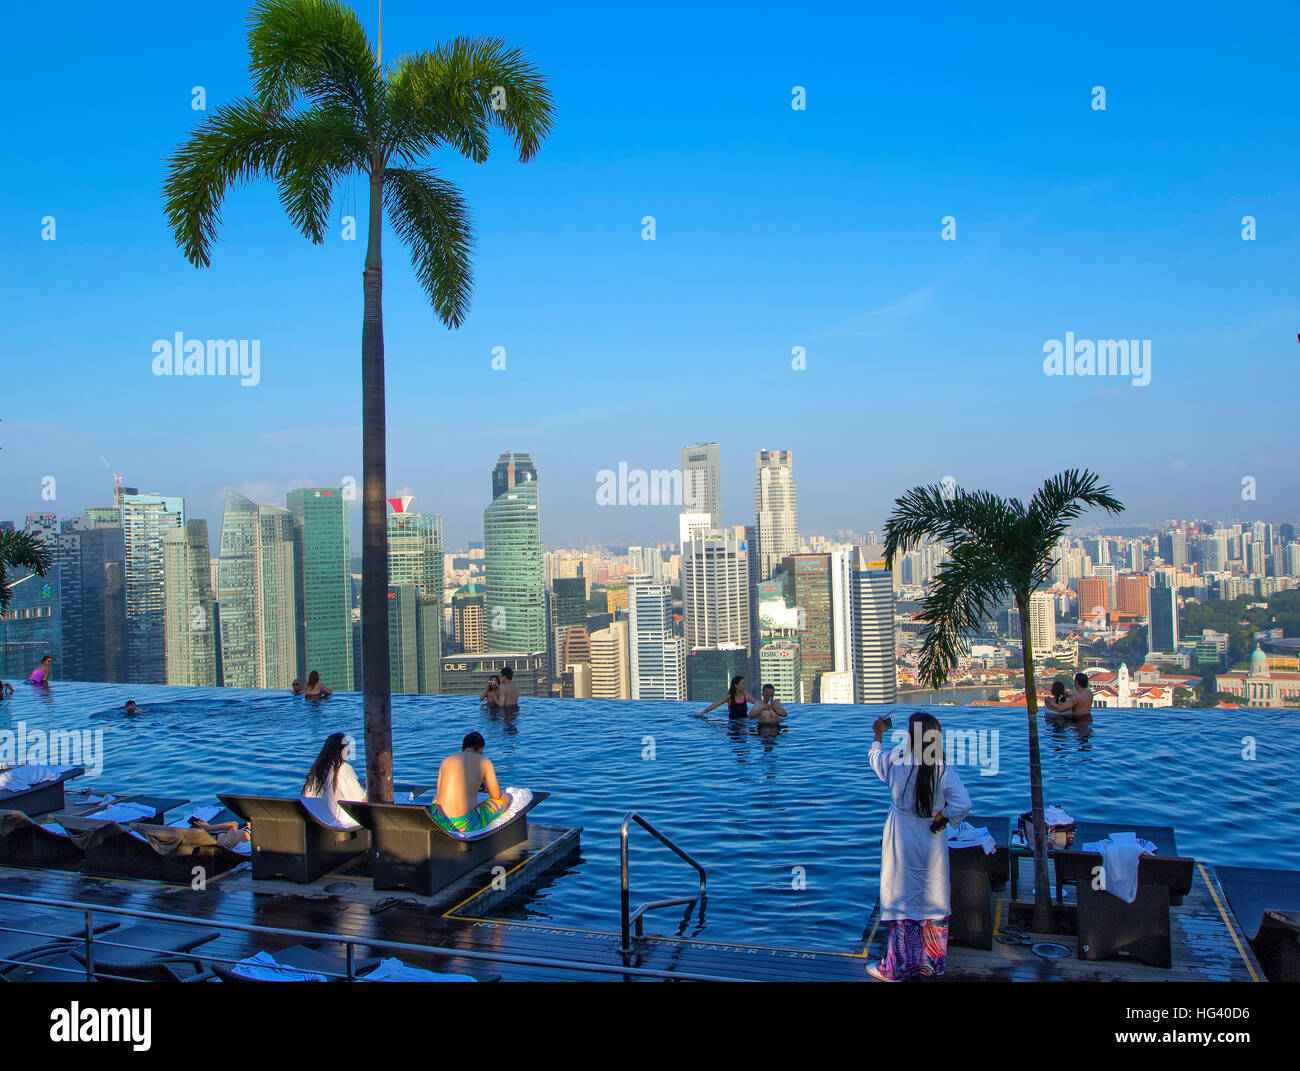 La piscine de la Marina Bay Sands SkyPark. Singapour Banque D'Images